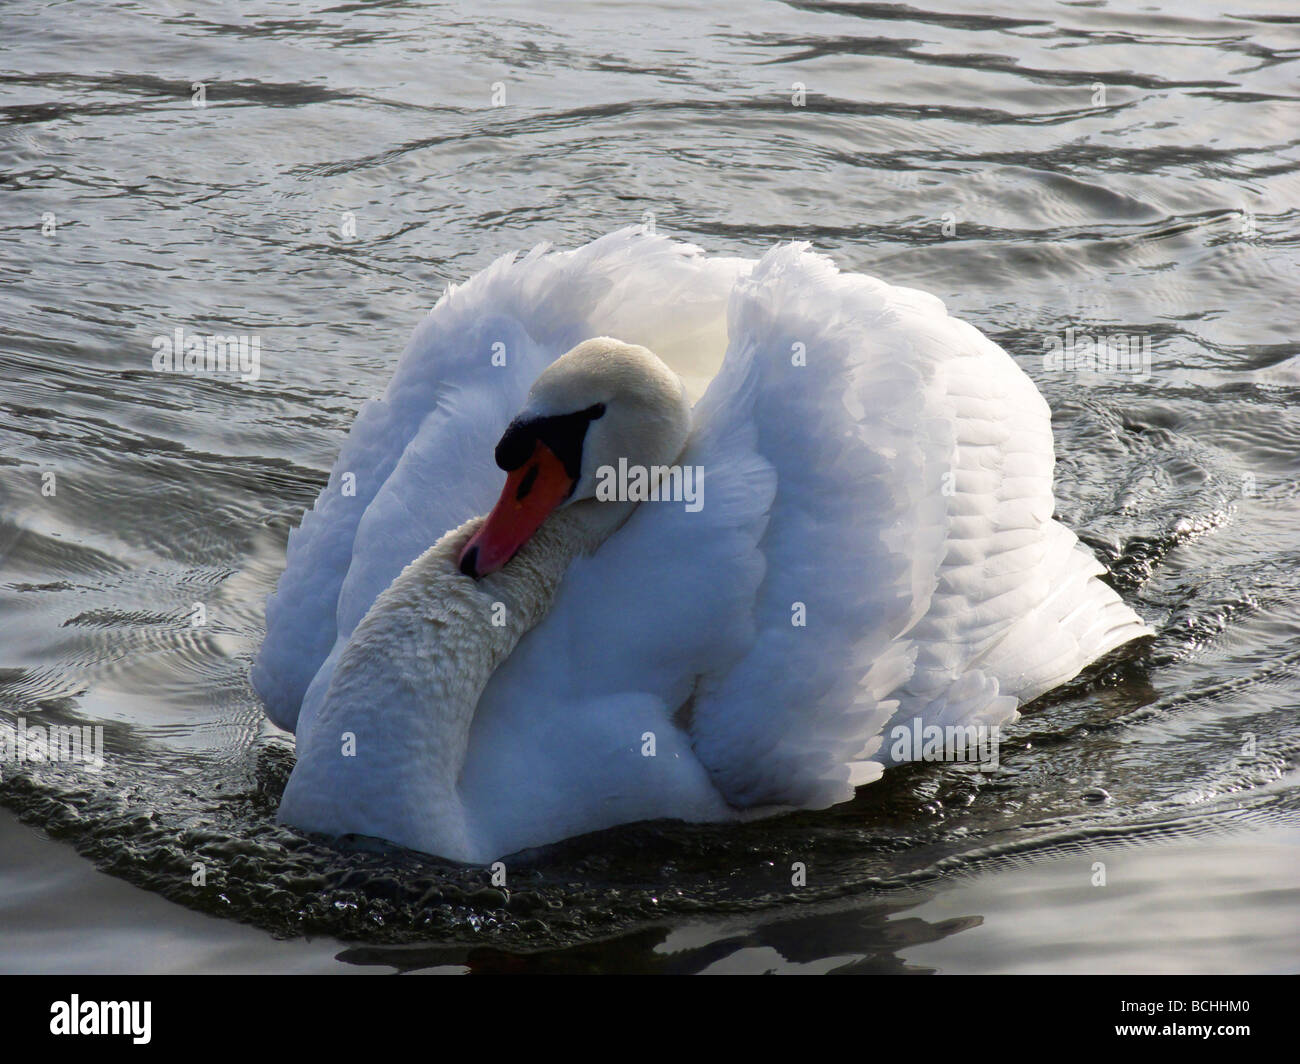 Swan swimming on lake Stock Photo